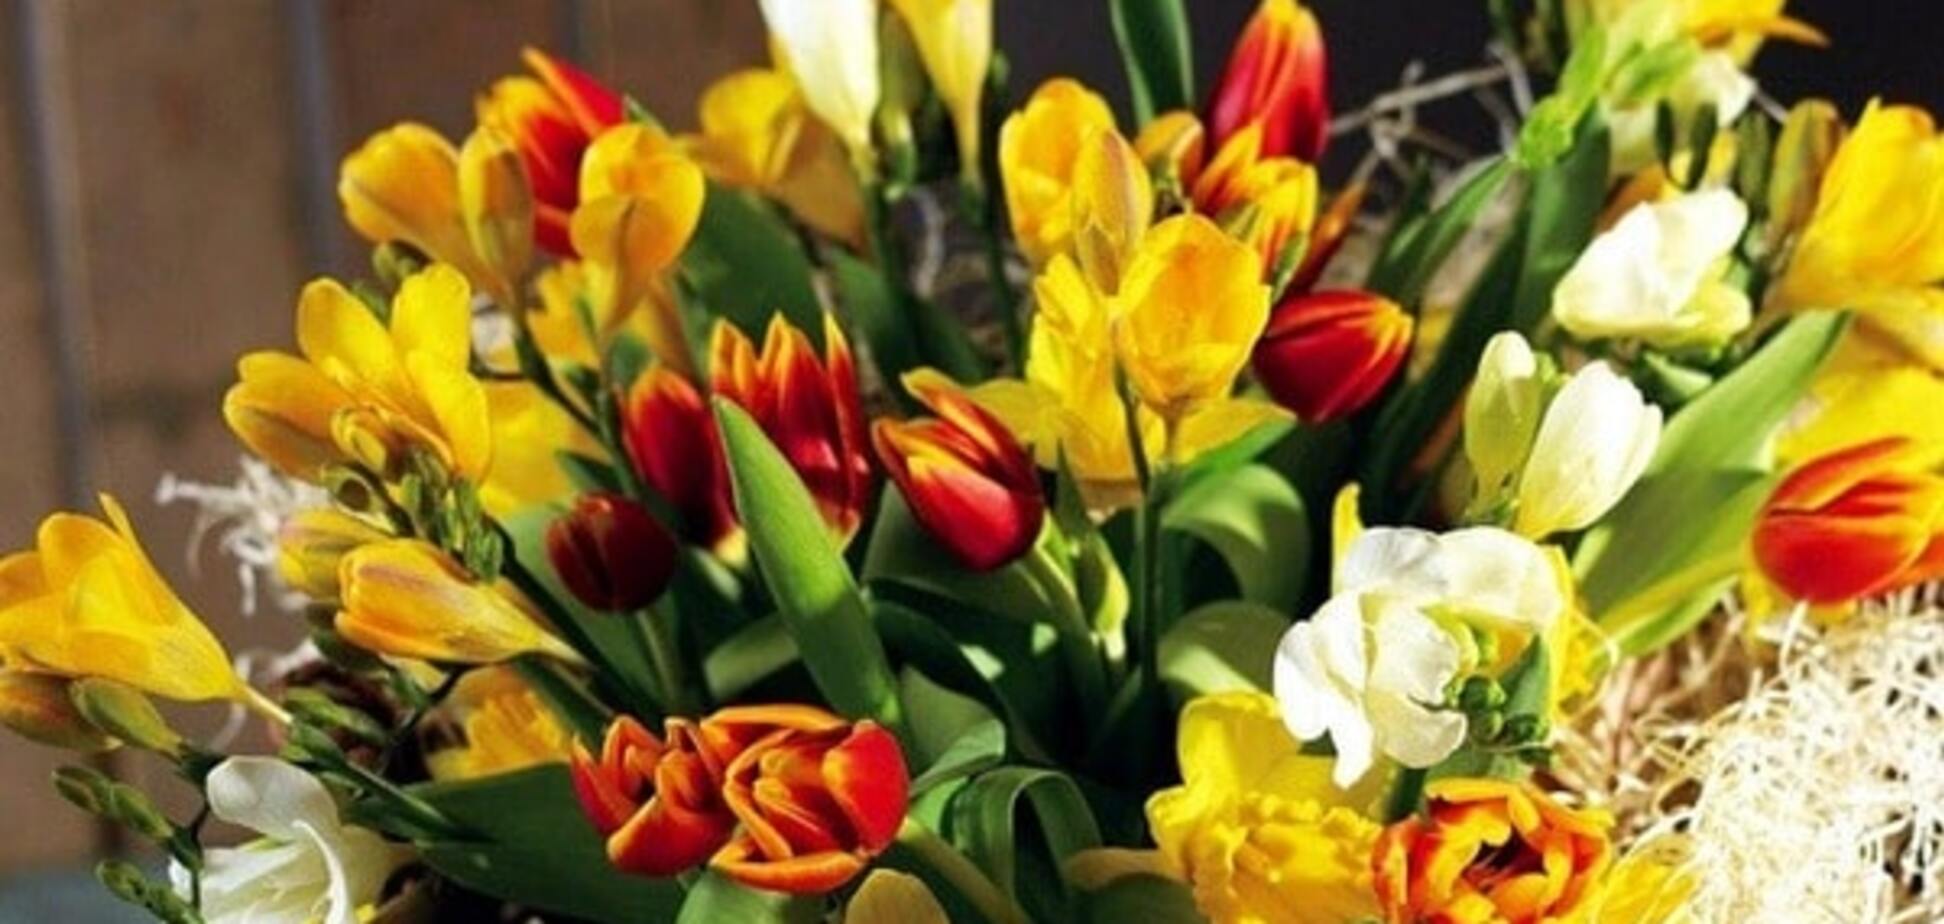 Подарок директору: в киевском офисе взорвался букет цветов